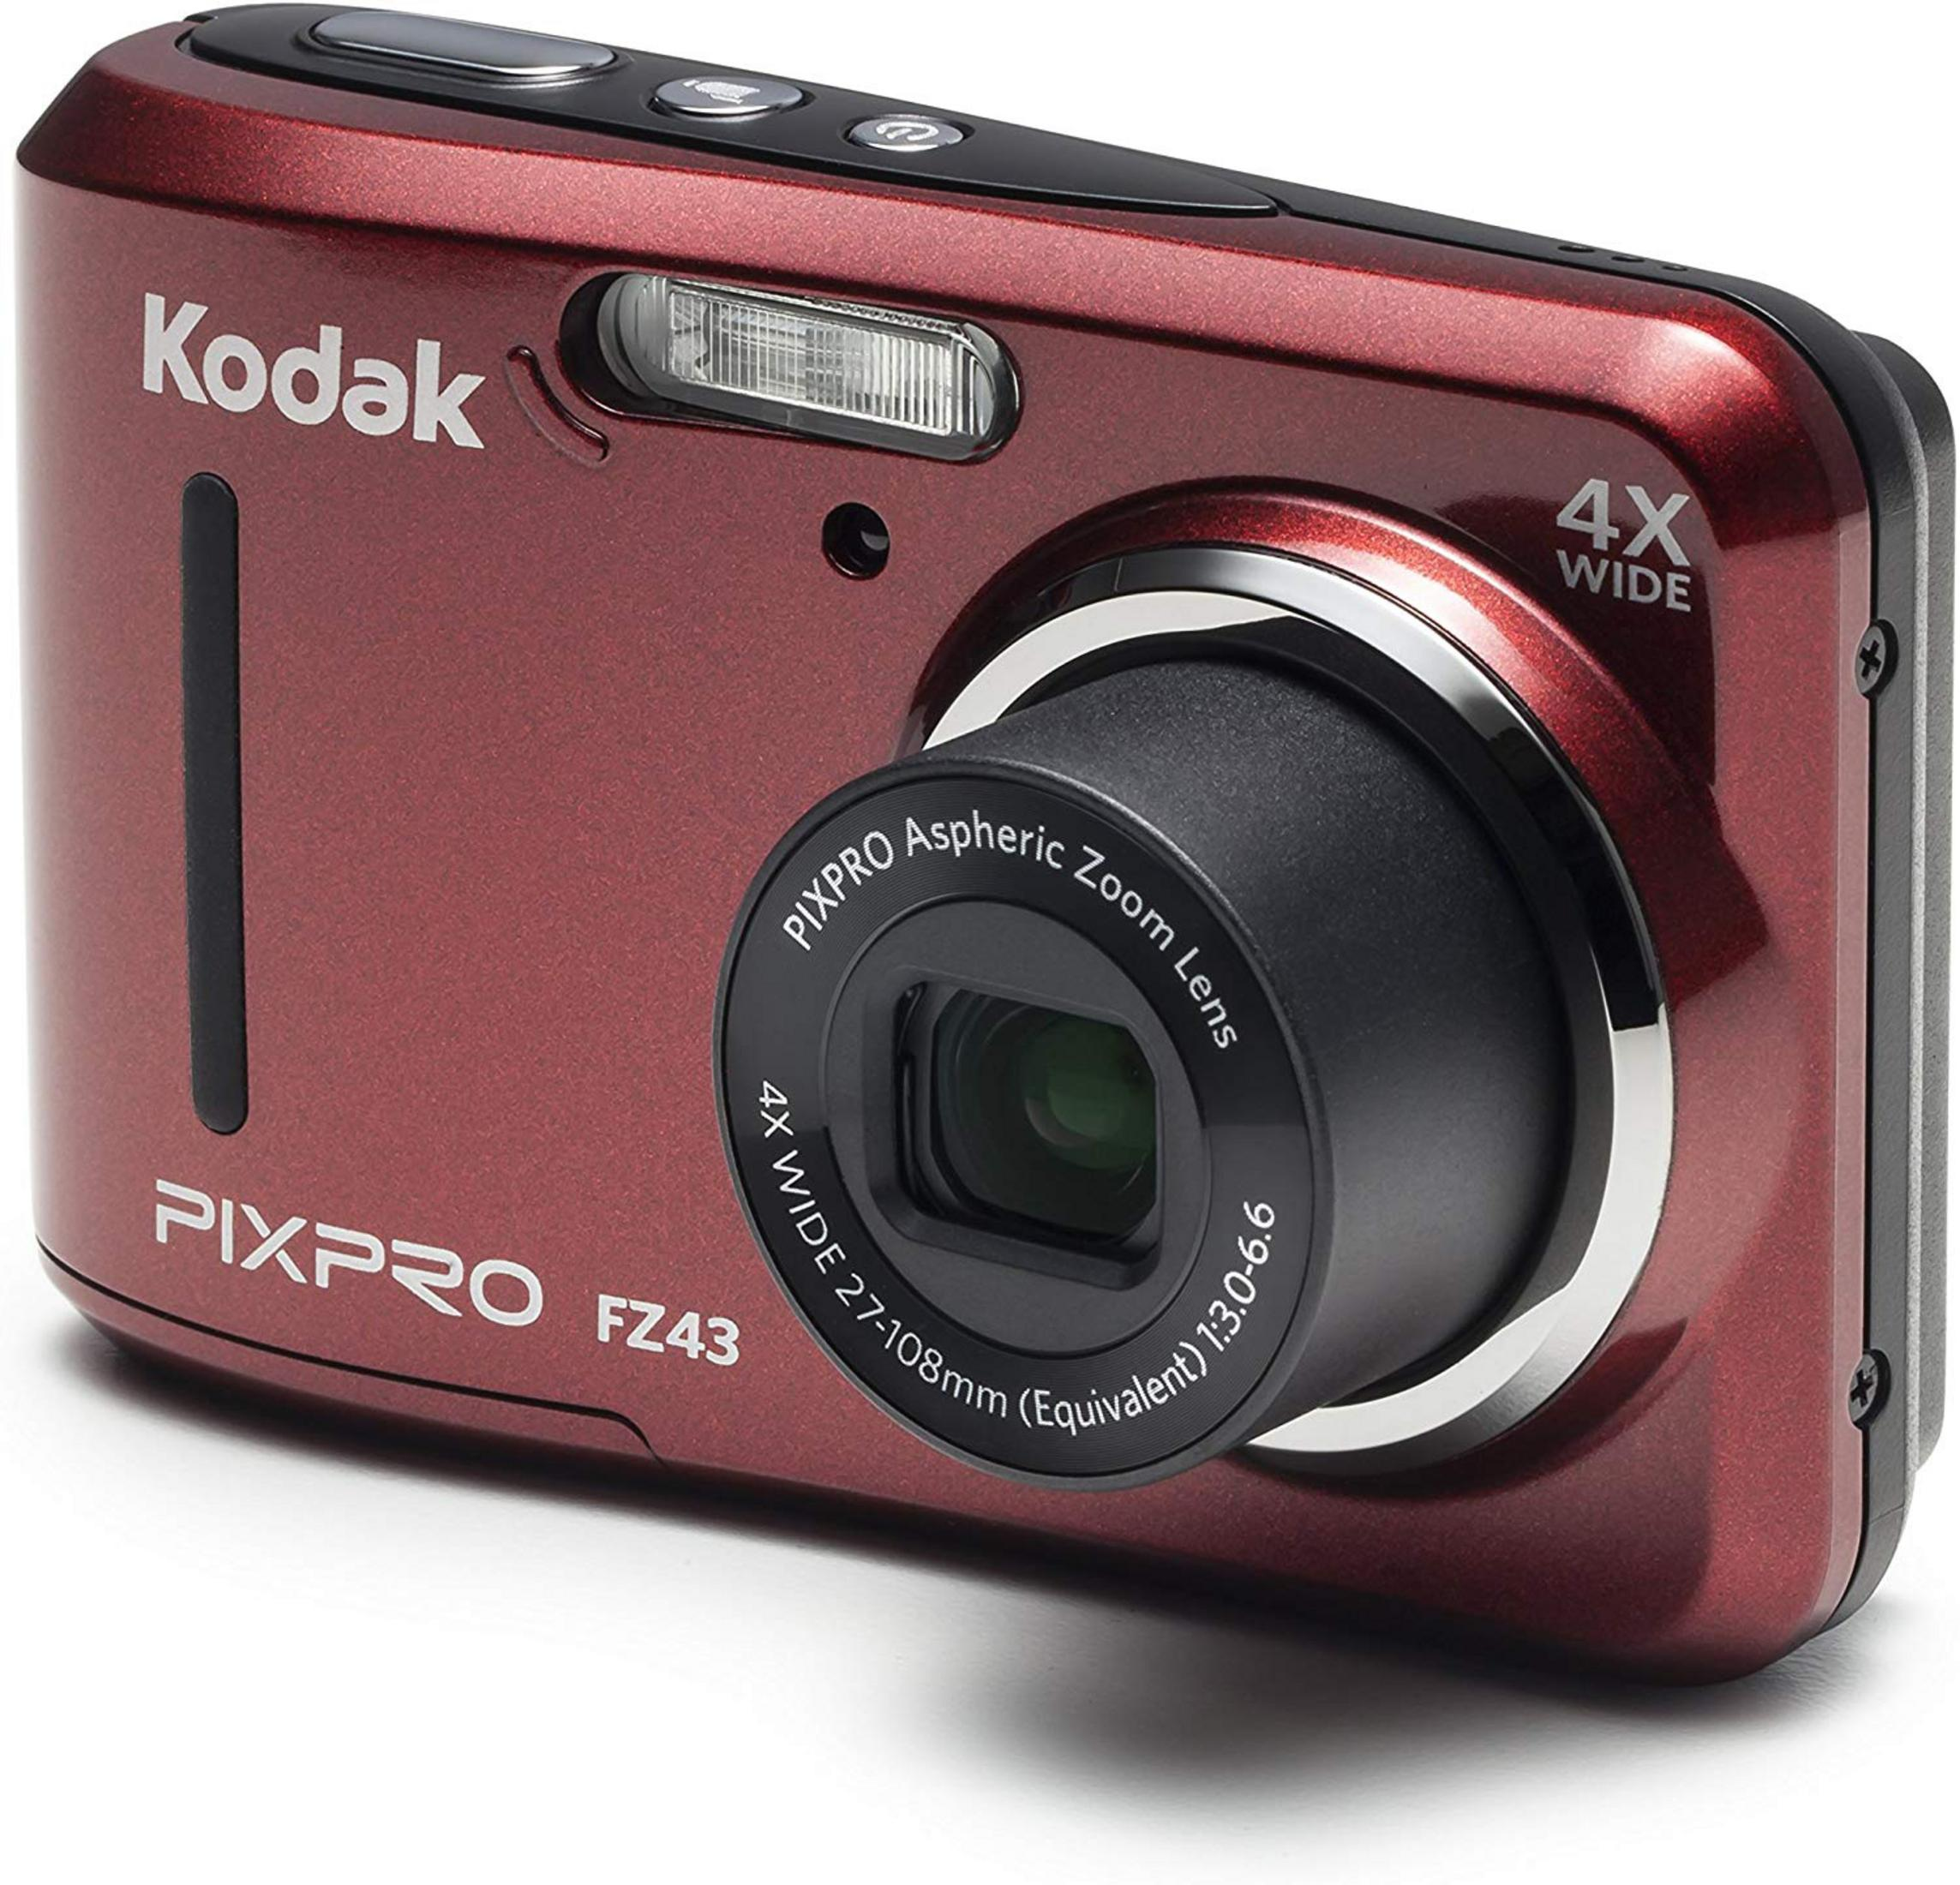 Digitalkamera PIXPRO Zoom, FZ-43-RED KODAK 16 ROT opt. - MP, Rot, FZ-43 4x LCD-